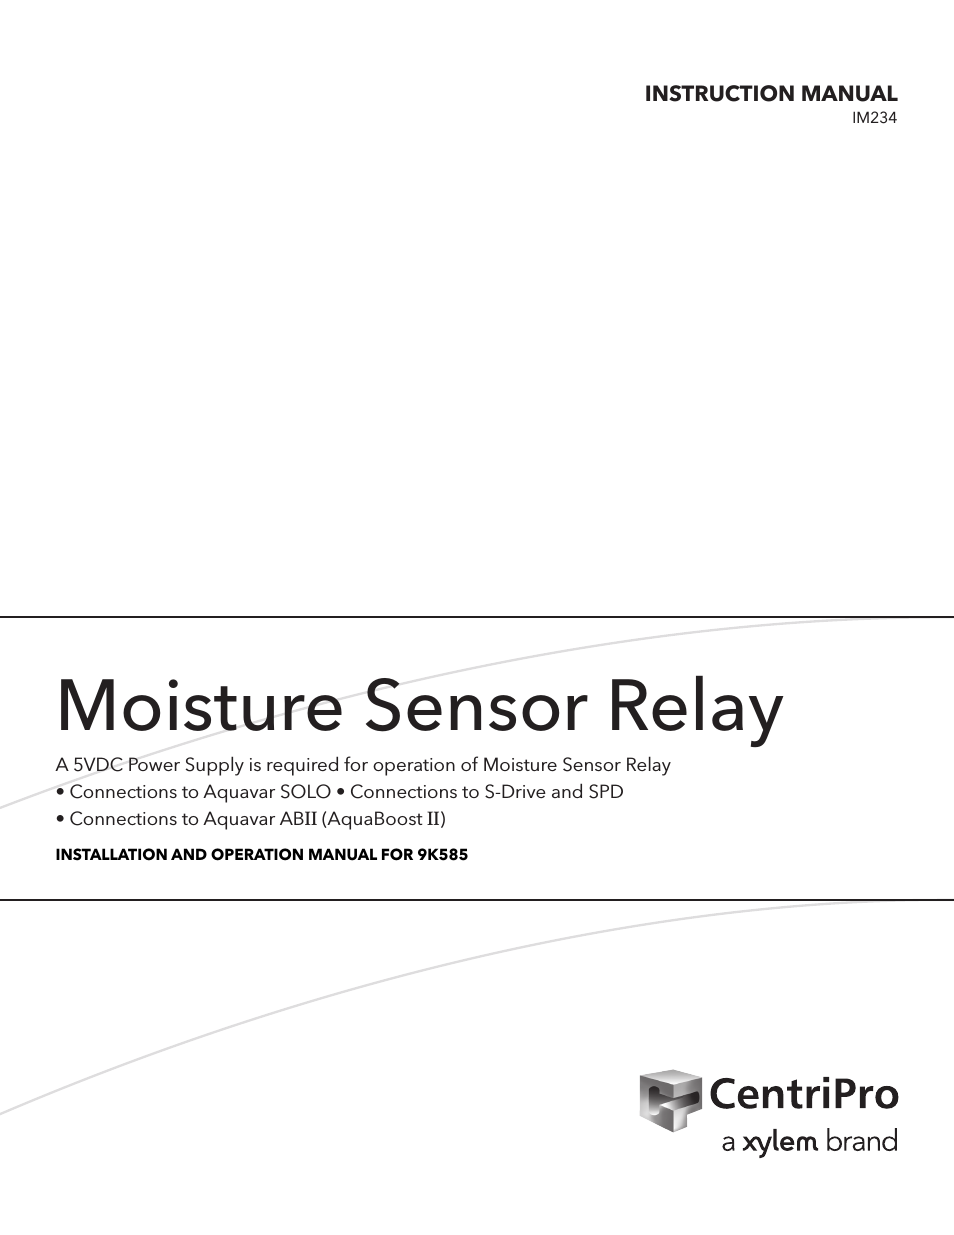 IM234 R01 9K585 Moisture Sensor Relay